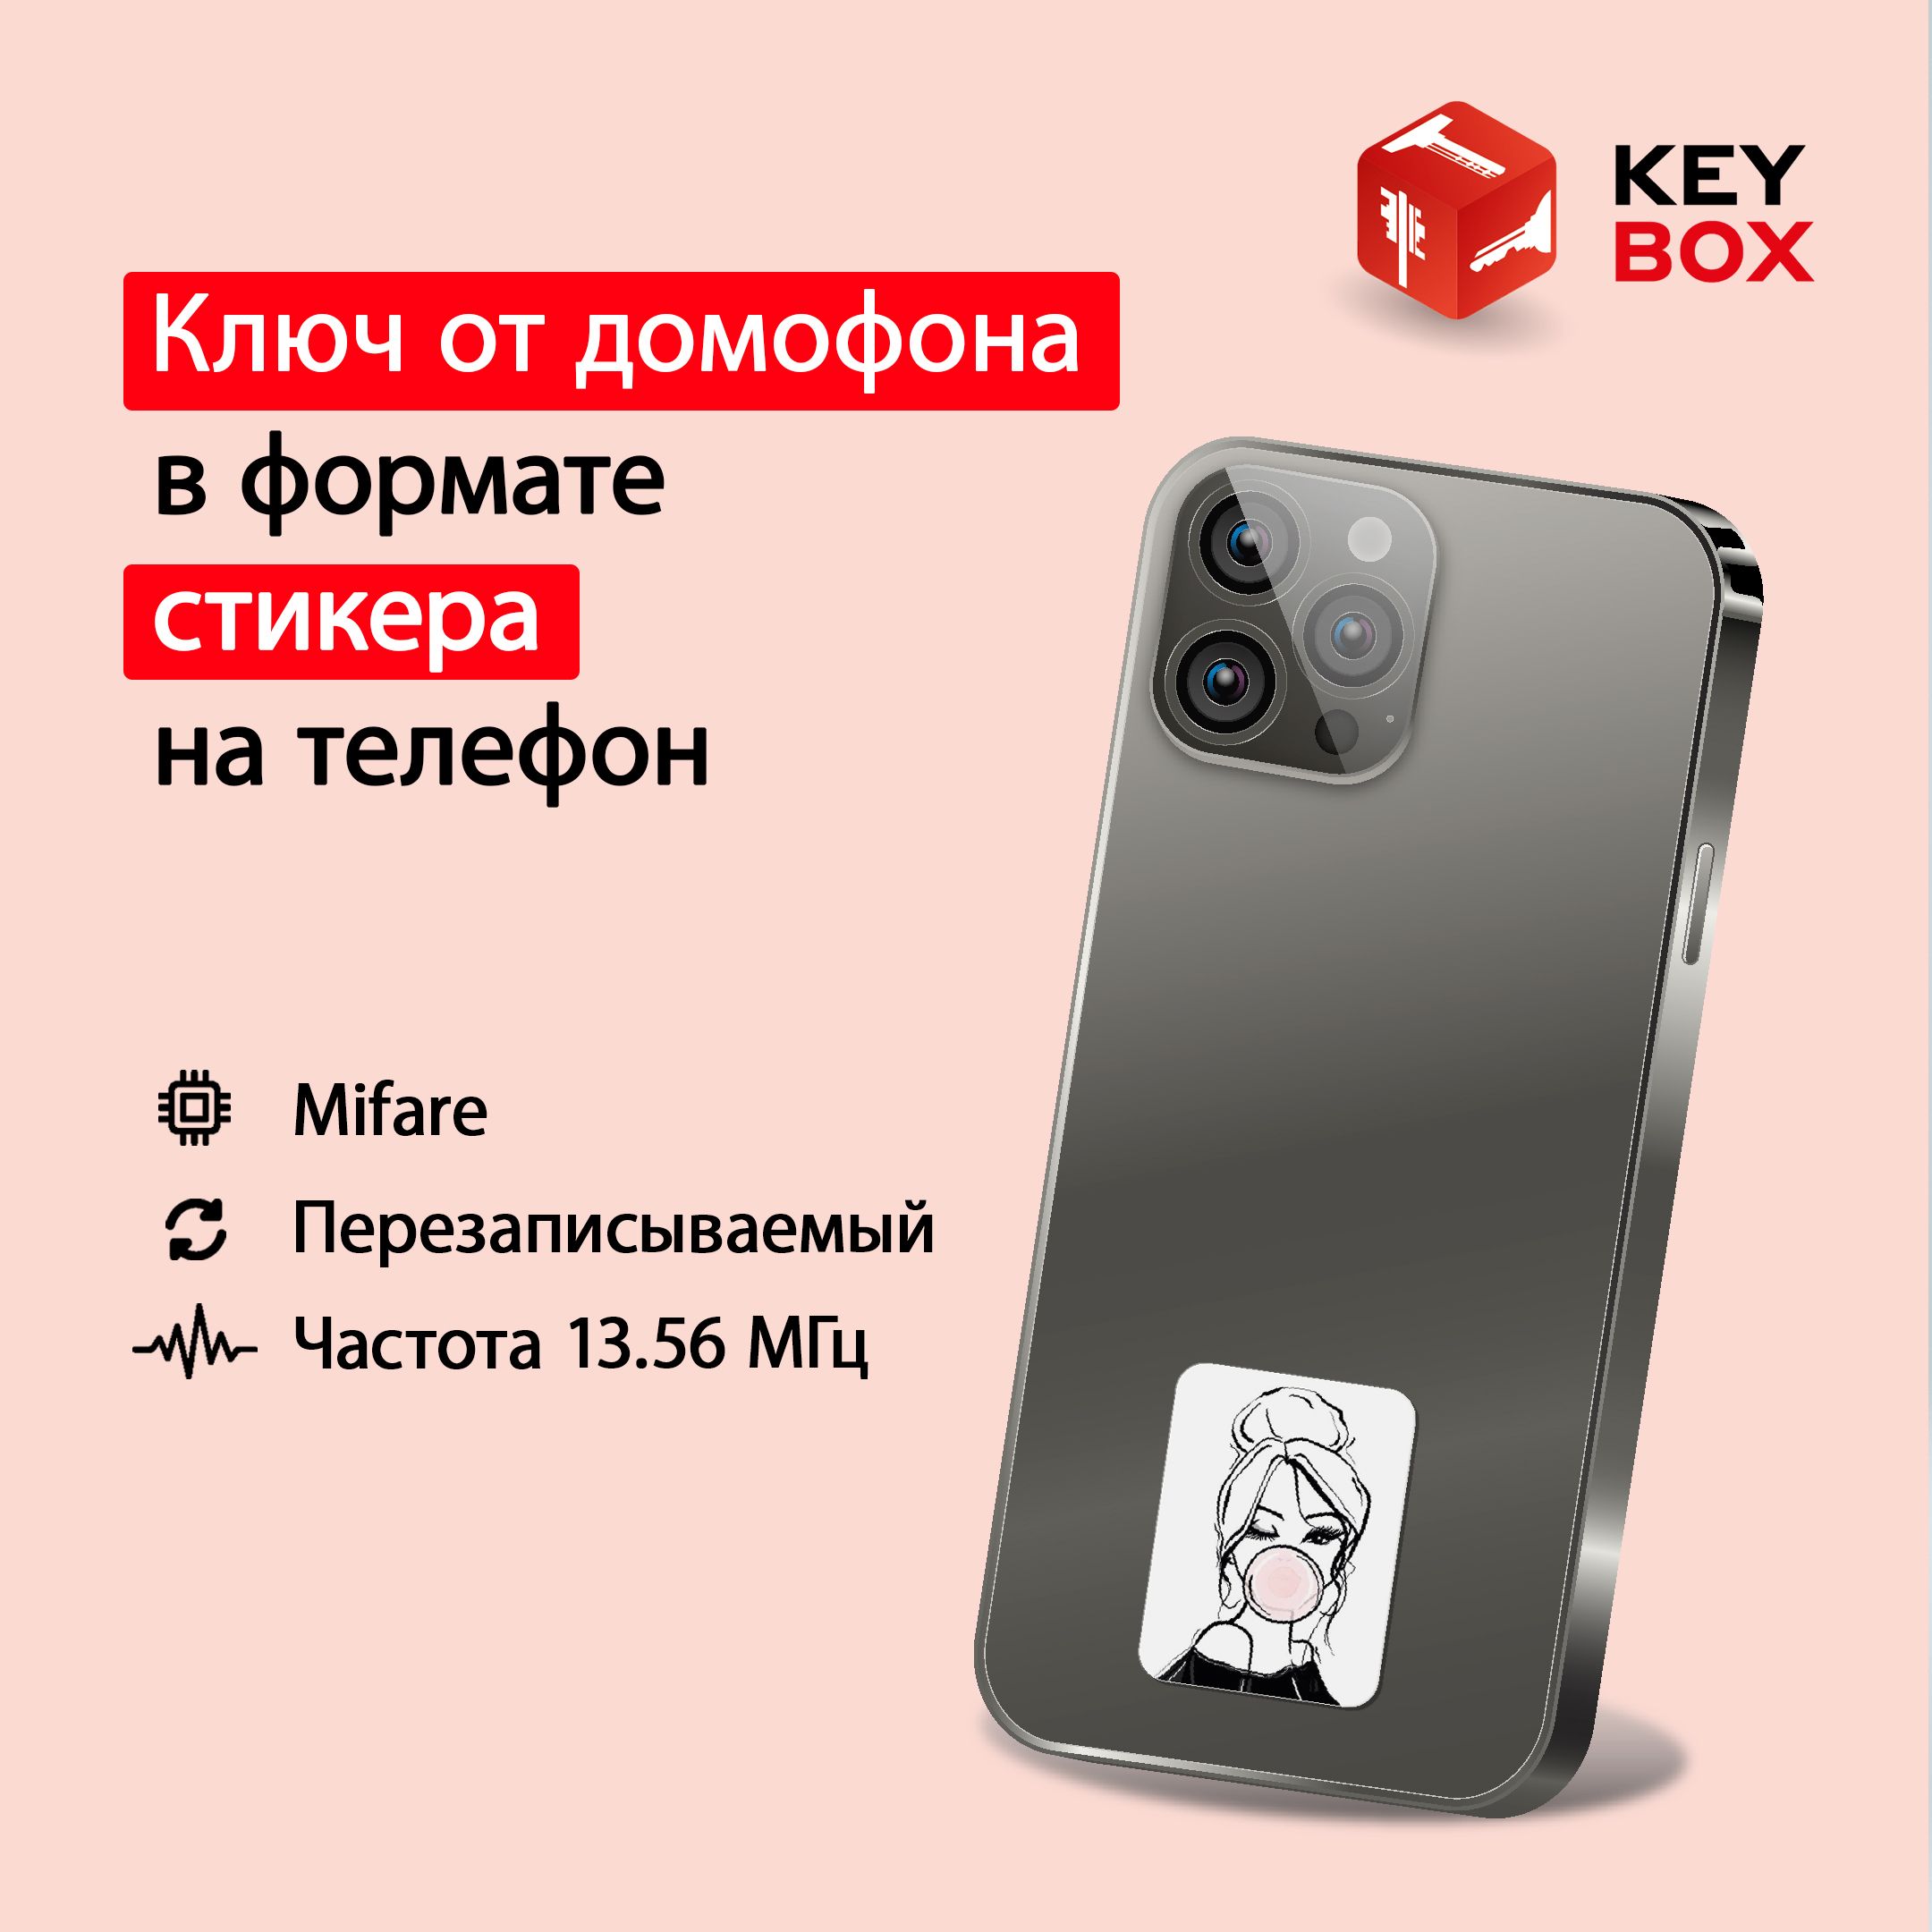 Ключ-стикер для домофона на телефон Keybox Mifare St003, Девушка музыкальный телефон